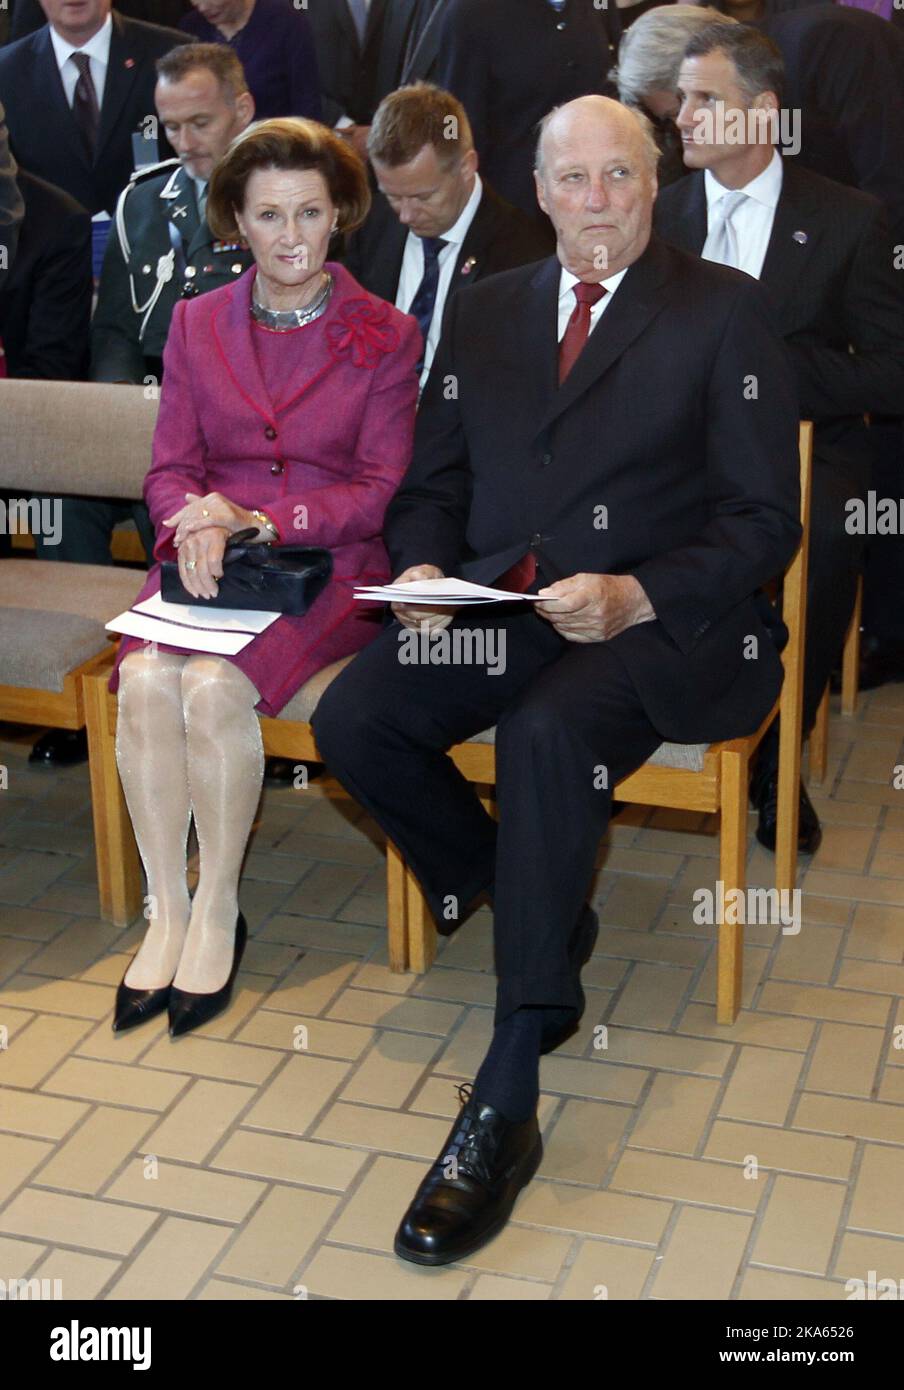 König Harald und Königin Sonja von Norwegen bei einem Besuch am Augsburg College in Saint Paul, Minnesota, USA, Sonntag, 16. 2011. Oktober. Foto von Lise Aserud, Scanpix Norwegen Stockfoto